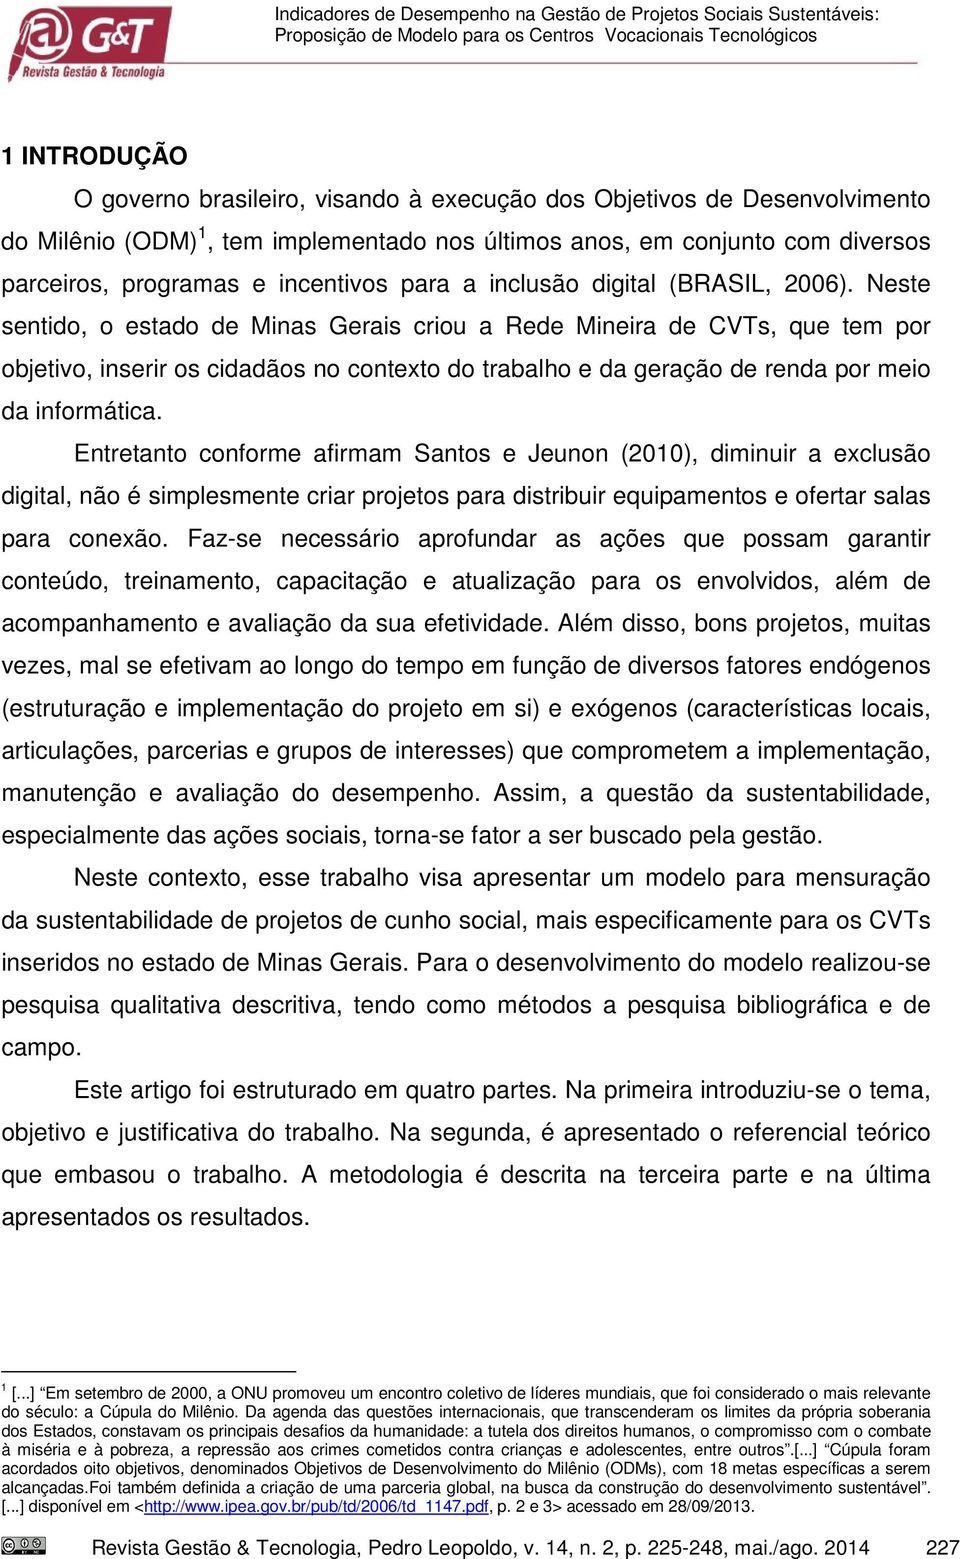 Neste sentido, o estado de Minas Gerais criou a Rede Mineira de CVTs, que tem por objetivo, inserir os cidadãos no contexto do trabalho e da geração de renda por meio da informática.